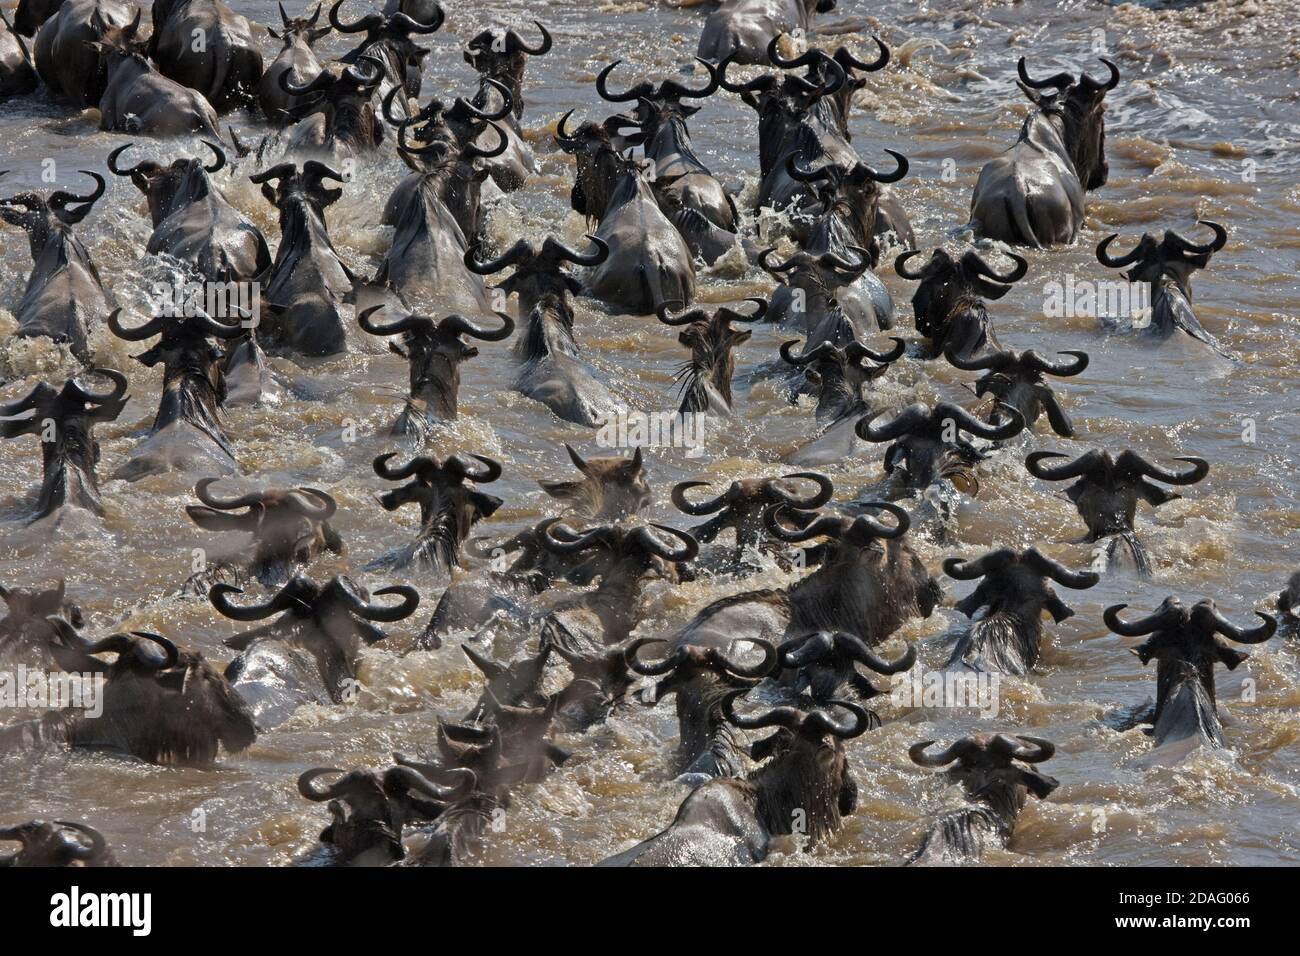 La migración de los ñus, cruzando el río Masai Masai Mara, Kenya Foto de stock